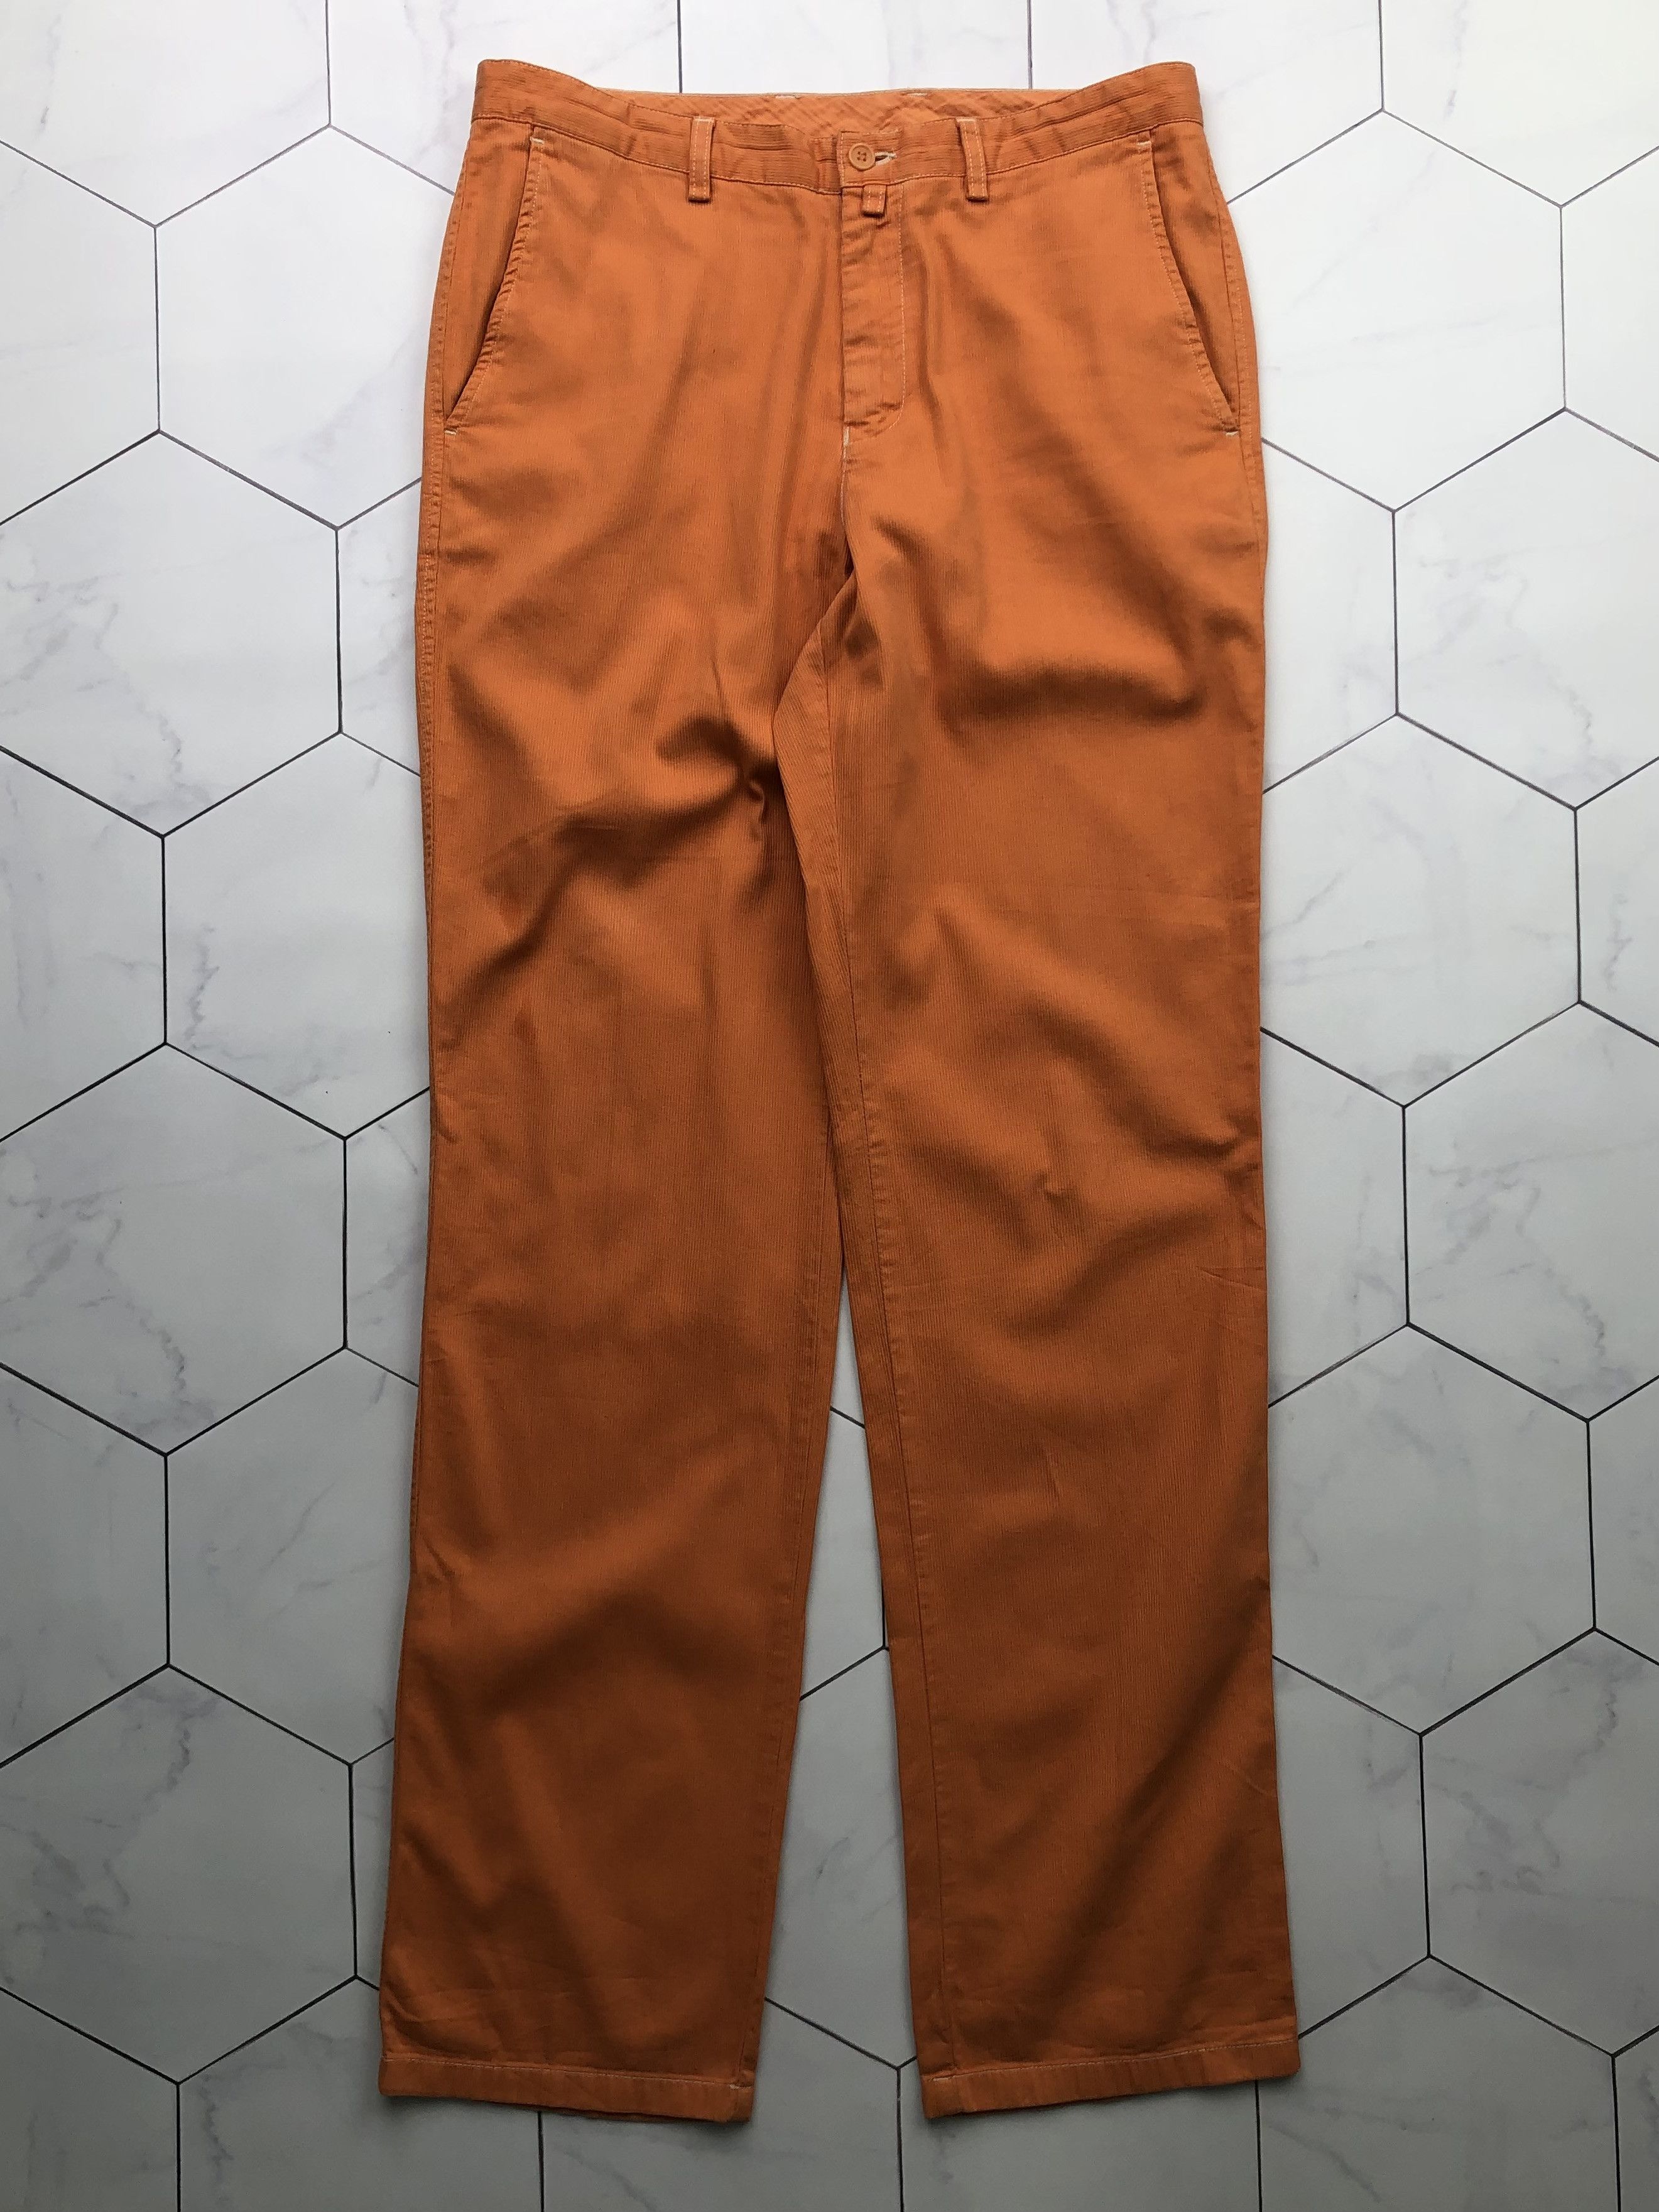 Lacoste Lacoste Corduroy Vintage Pants | Grailed